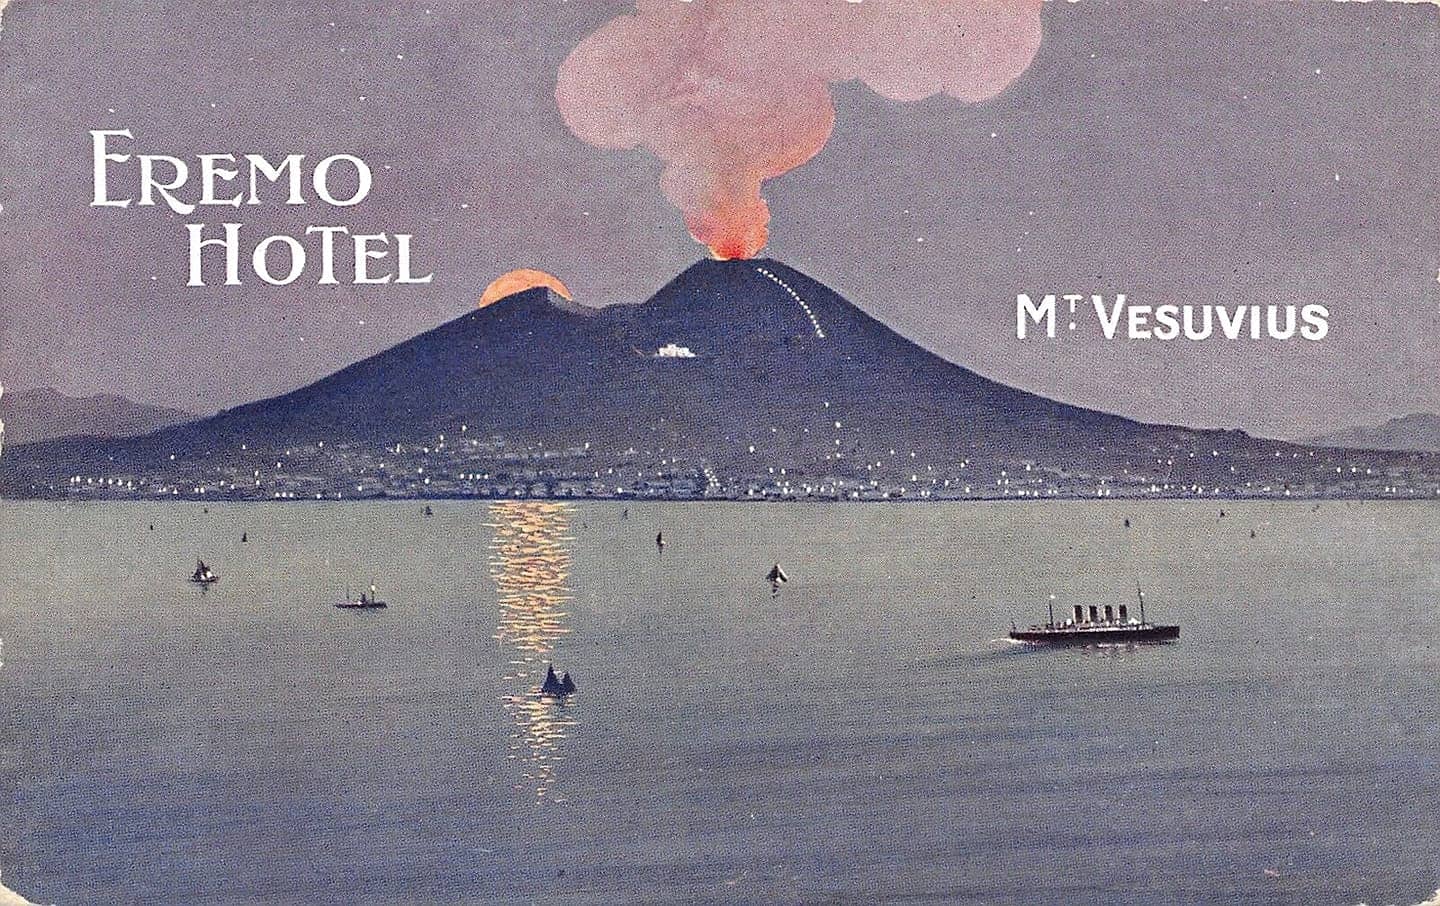 volcano presumably before 1944